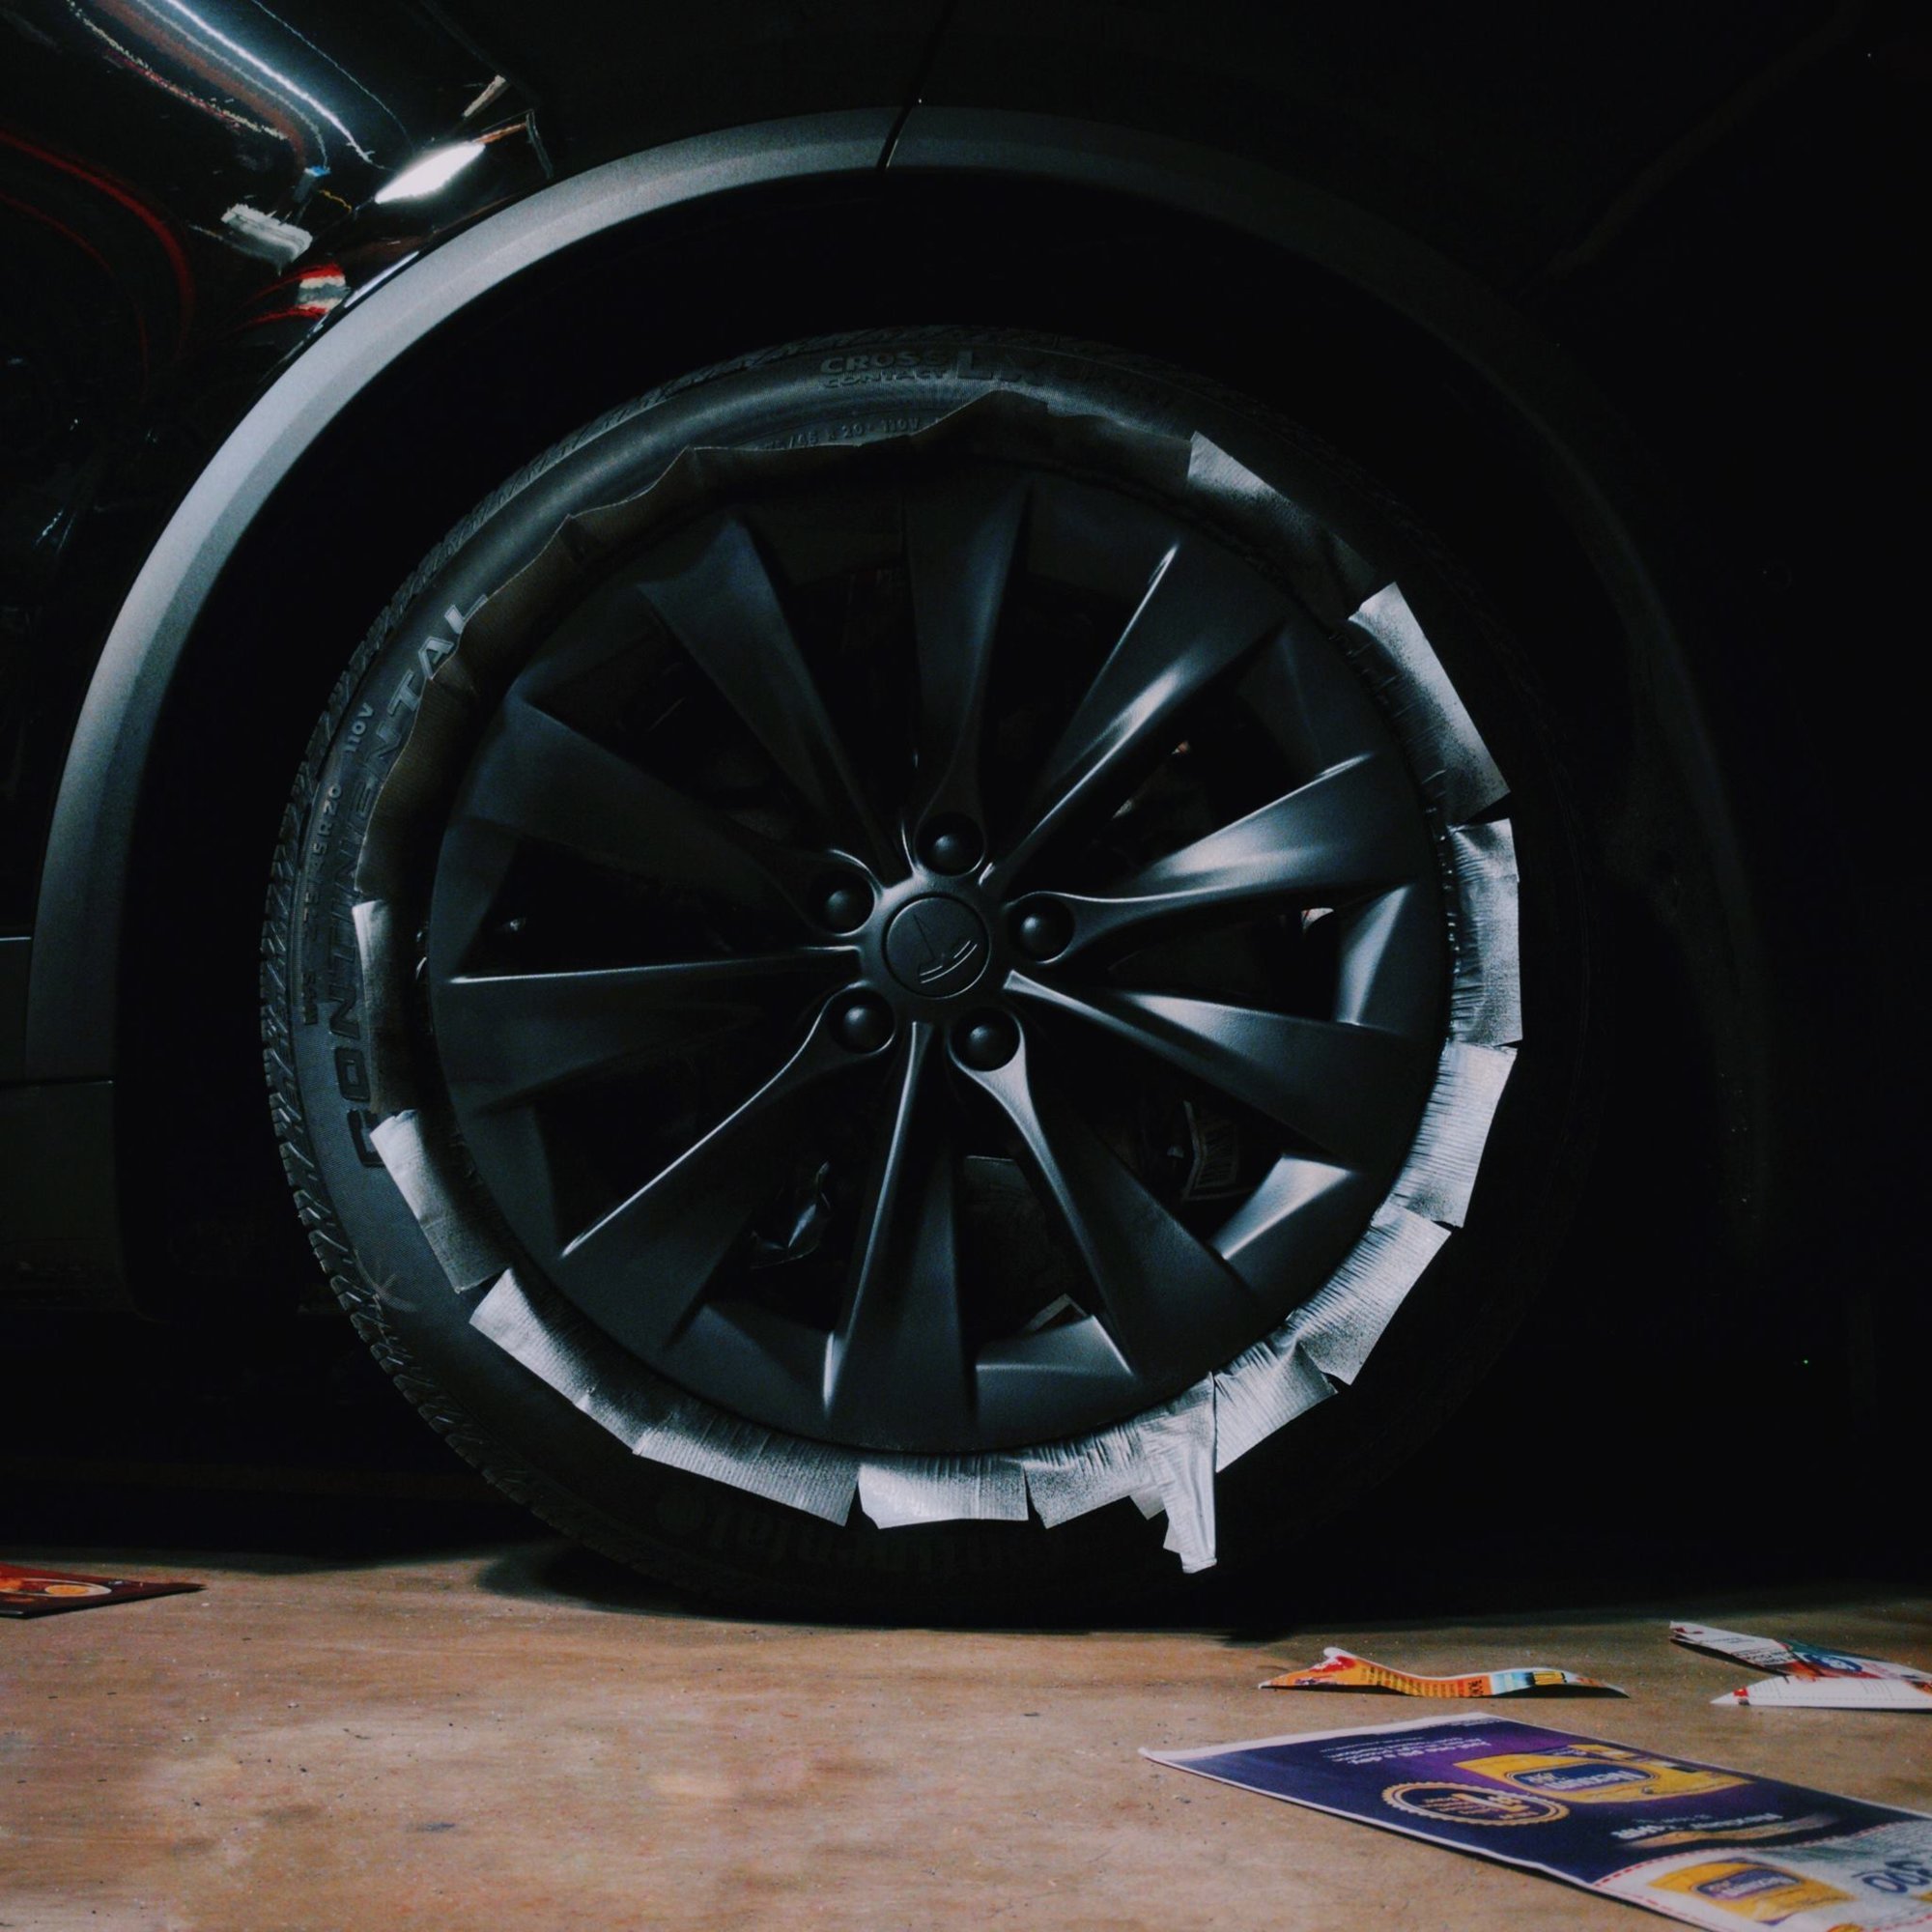 PlastiDip on my wheels | Tesla Motors Club